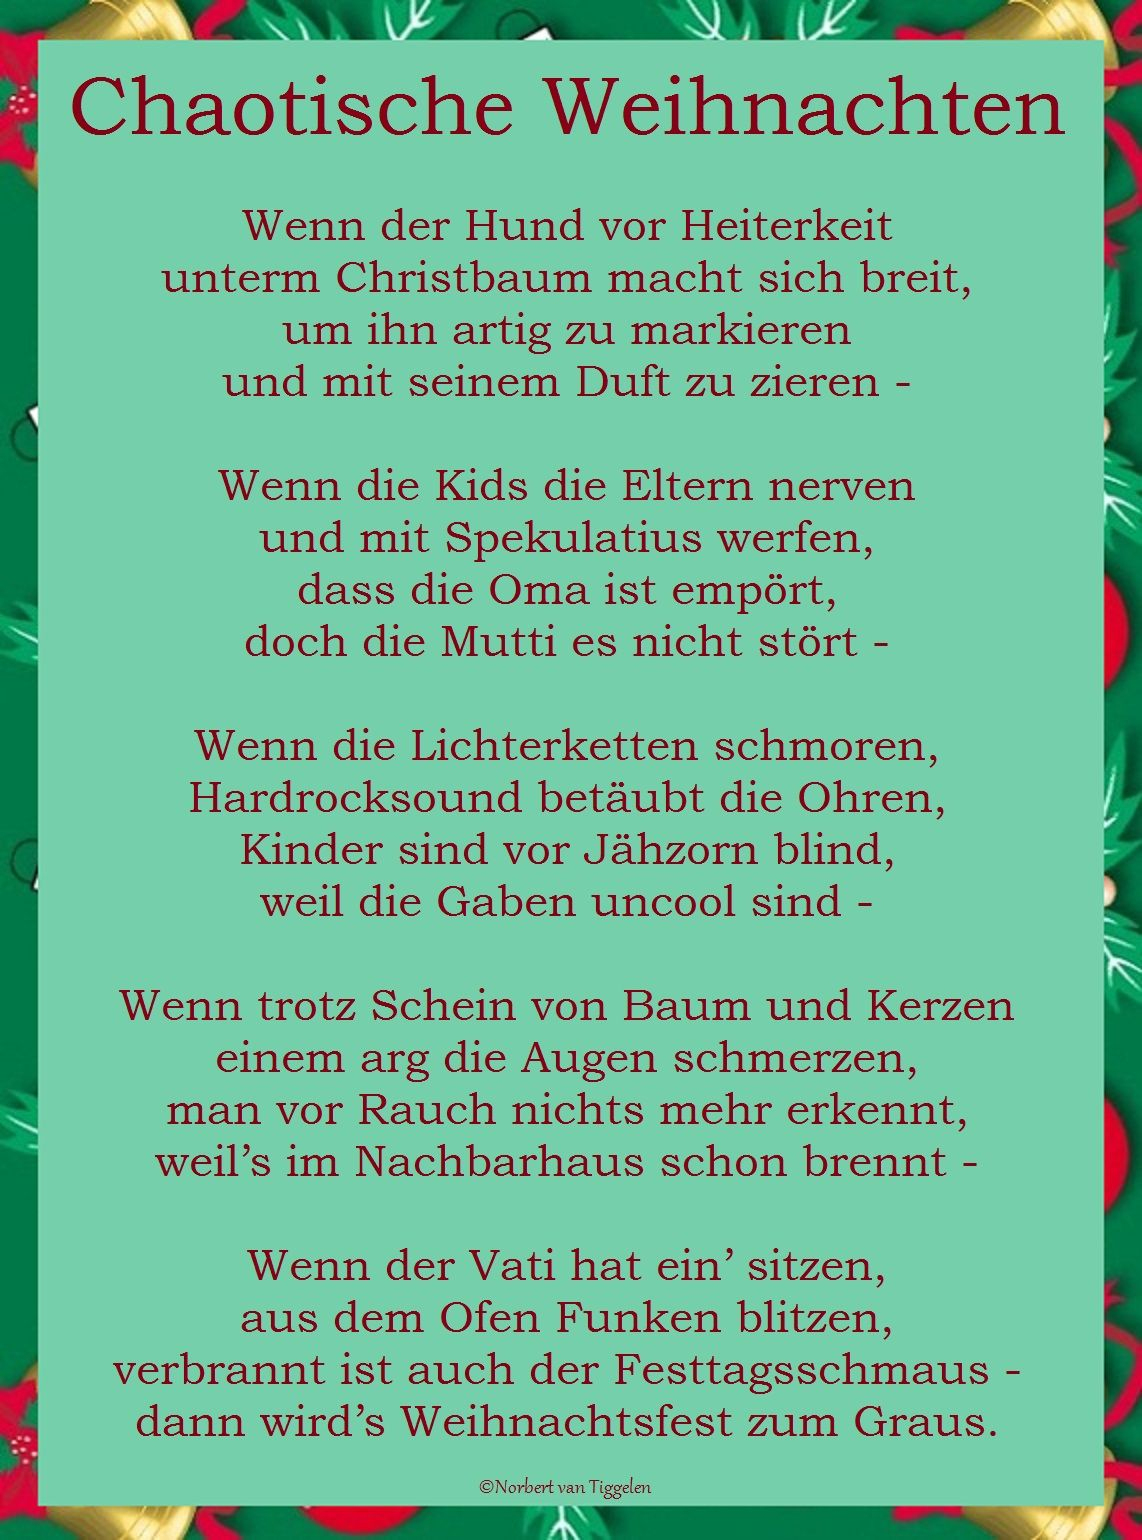 Weihnachten, Advent, Van Tiggelen, Gedichte, Menschen, Leben verwandt mit Gedichte Für Den Weihnachtsmann Lustig